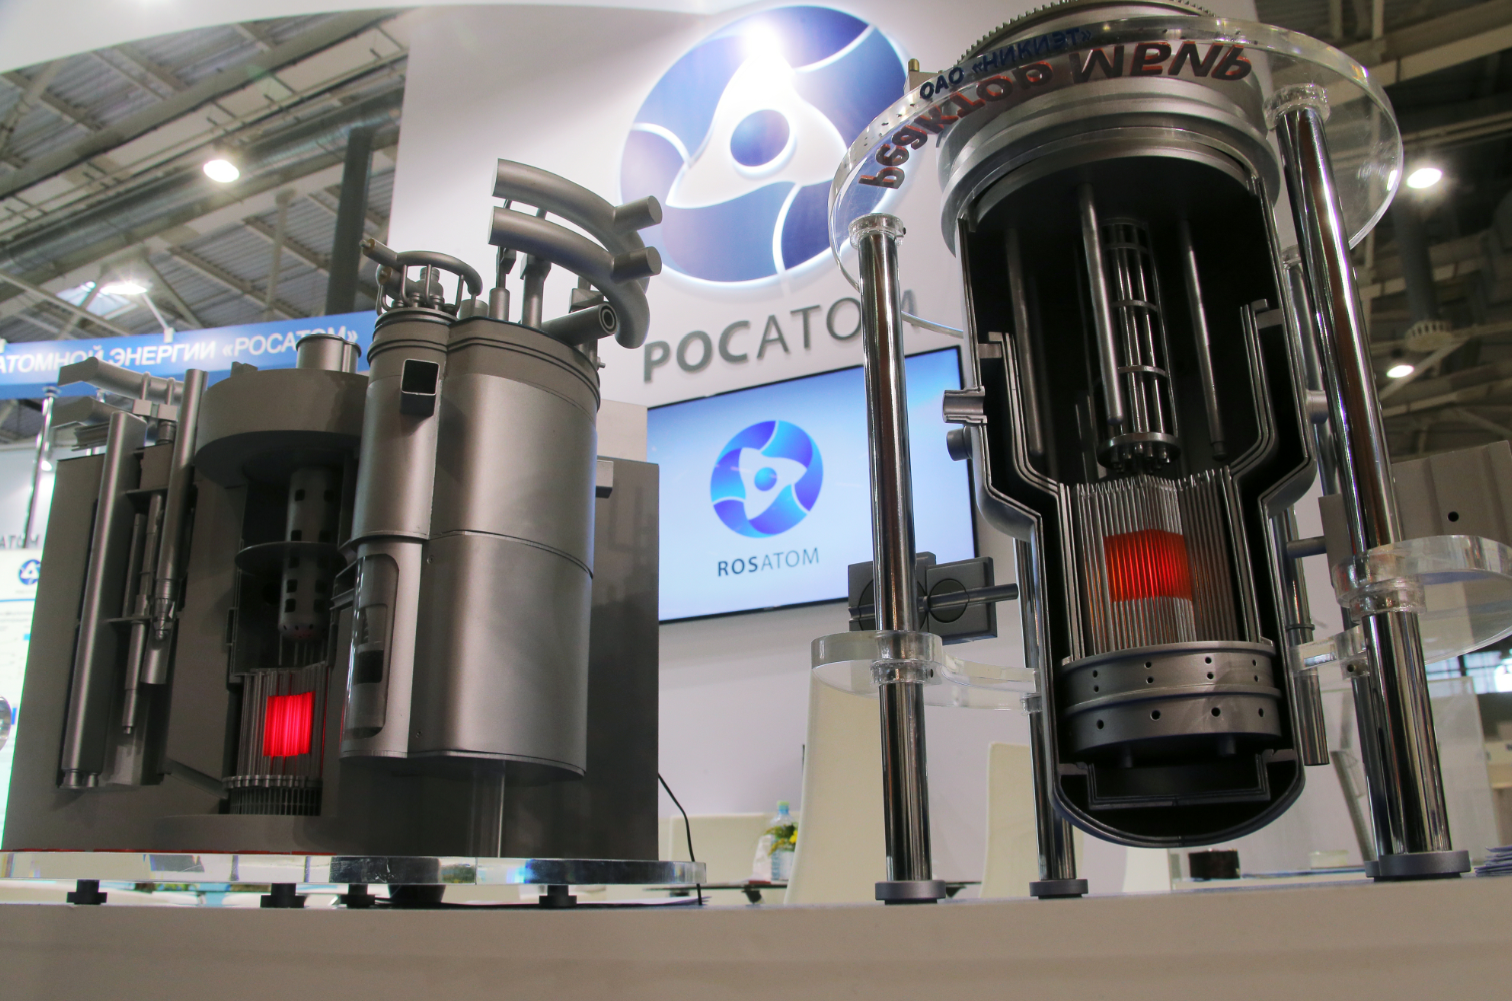 Rosatom adalah perusahaan negara yang didirikan pada tahun 2007, yang merupakan badan pengawas nuklir Rusia. Perusahaan ini bermarkas di Moskow.